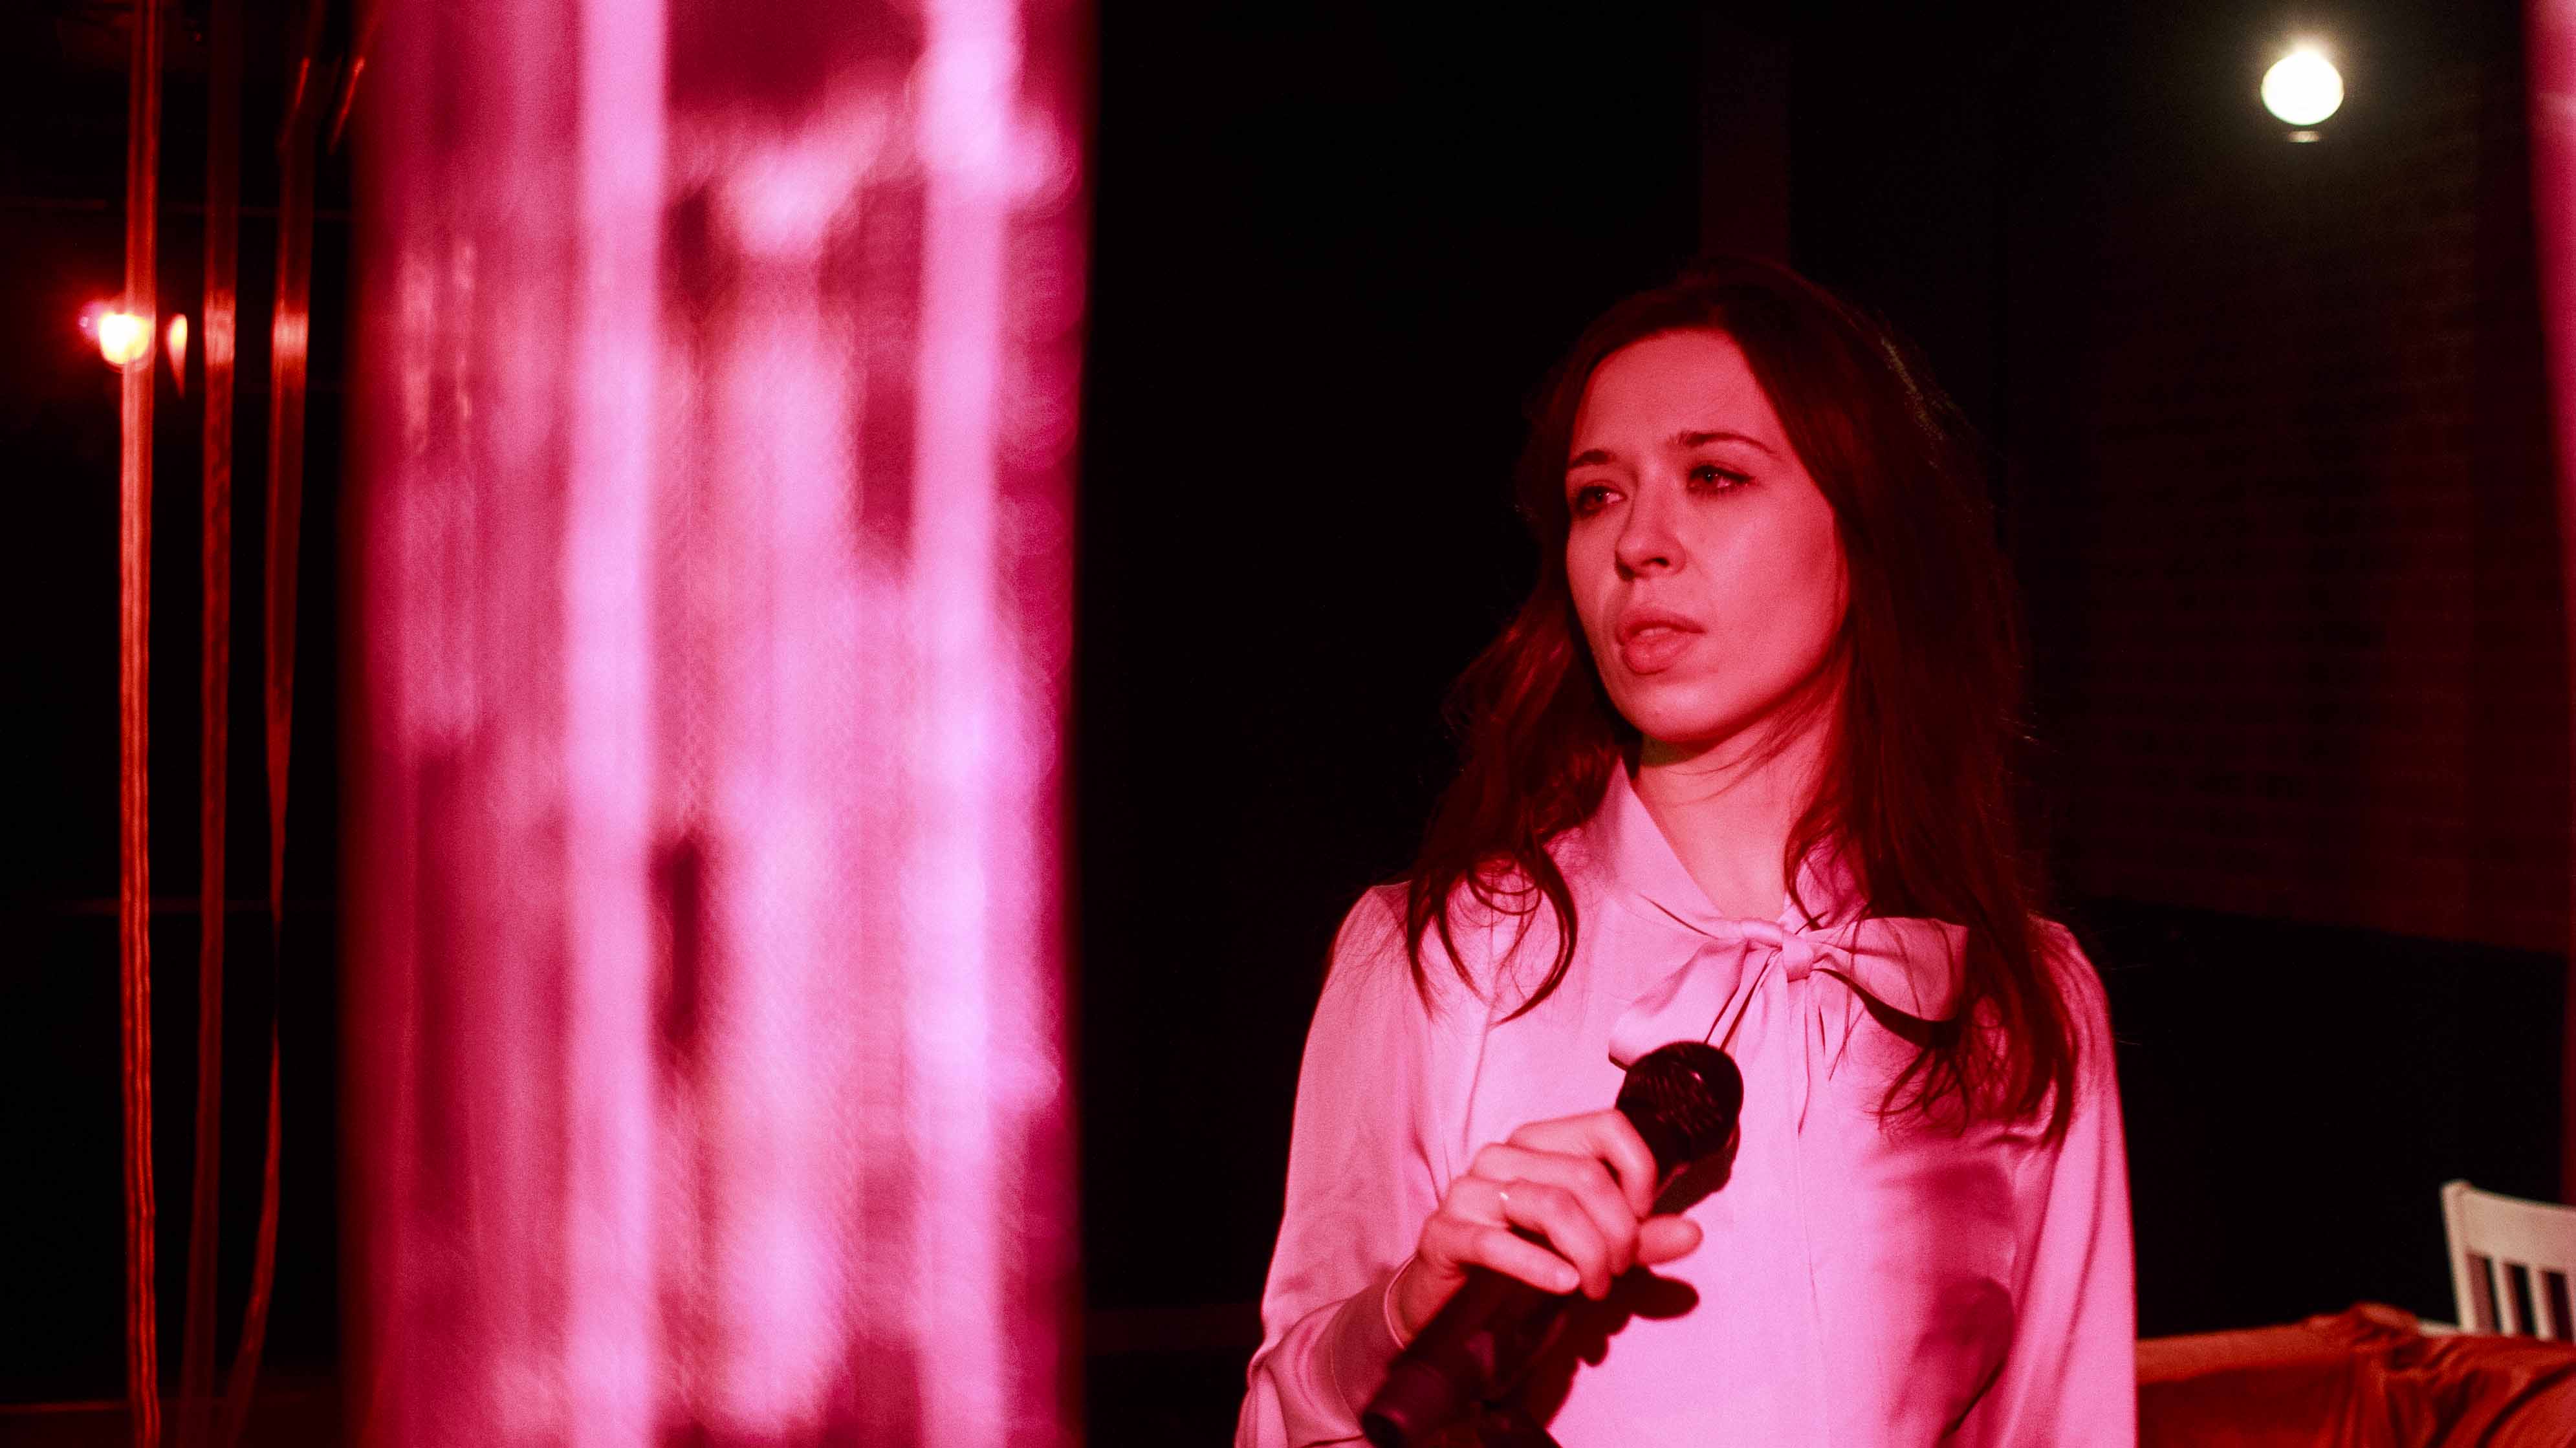 Zdjęcie do spektaklu Dobroć nasza dobroć. Aktorka w rózowo czerwonym świetle trzyma mikrofon.